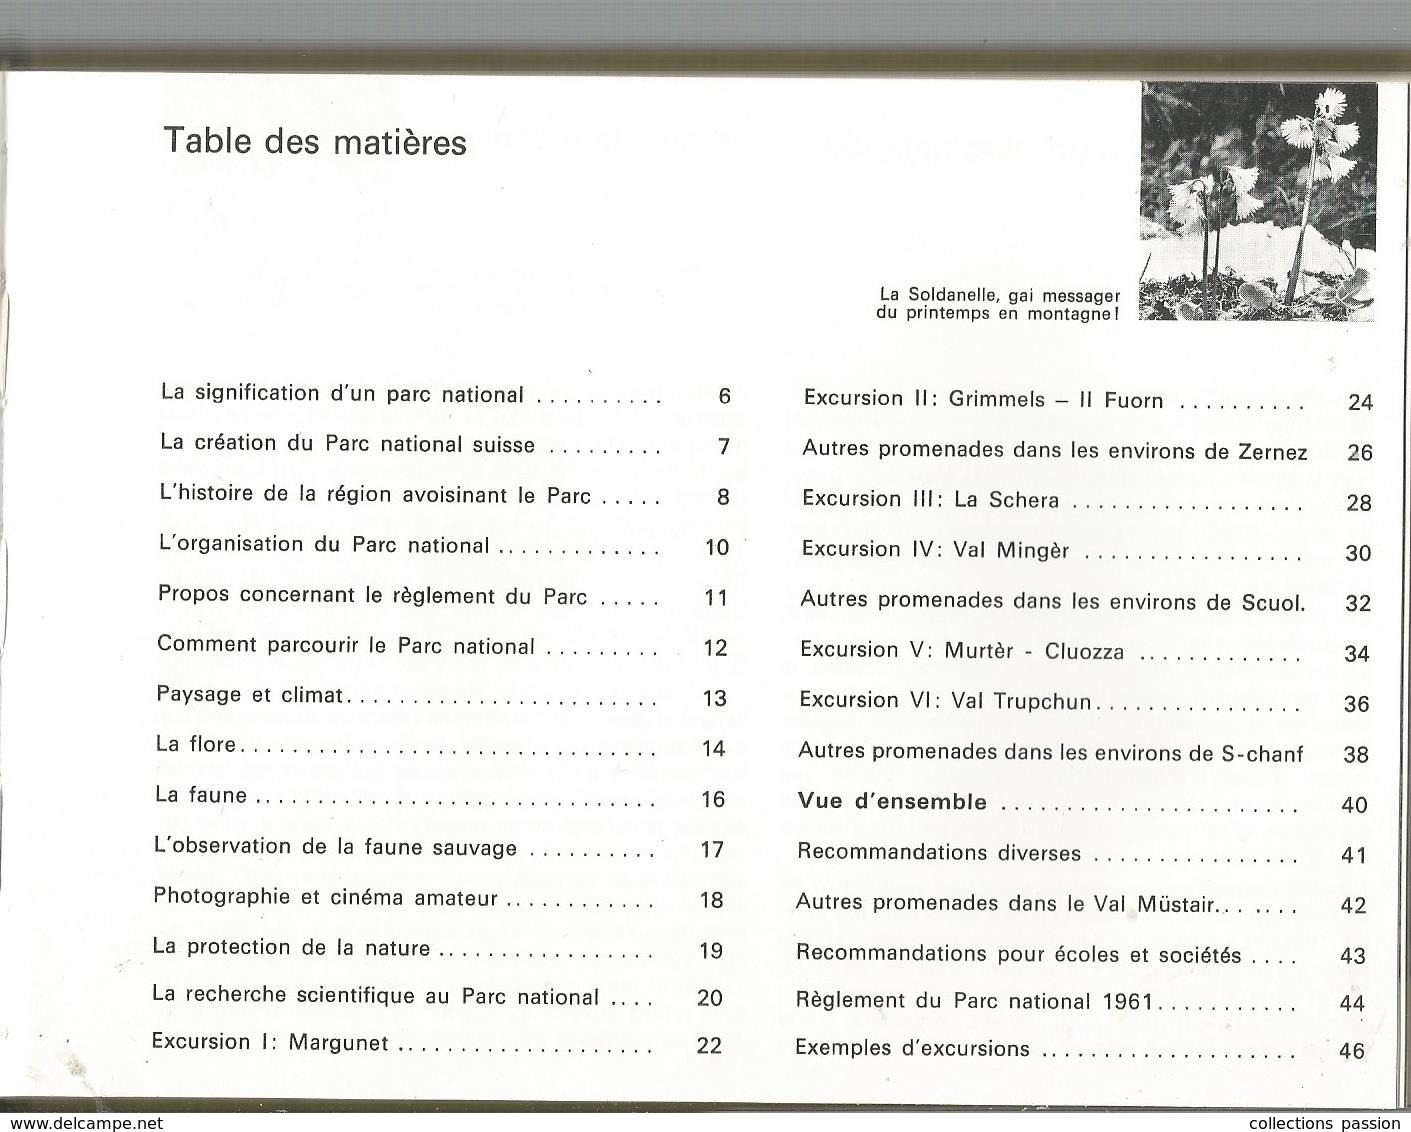 Régionalisme , SUISSE ,guide Officiel , LE PARC NATIONAL SUISSE, 47 Pages , 1974 , Photographies ,frais Fr 2.55 E - Ohne Zuordnung